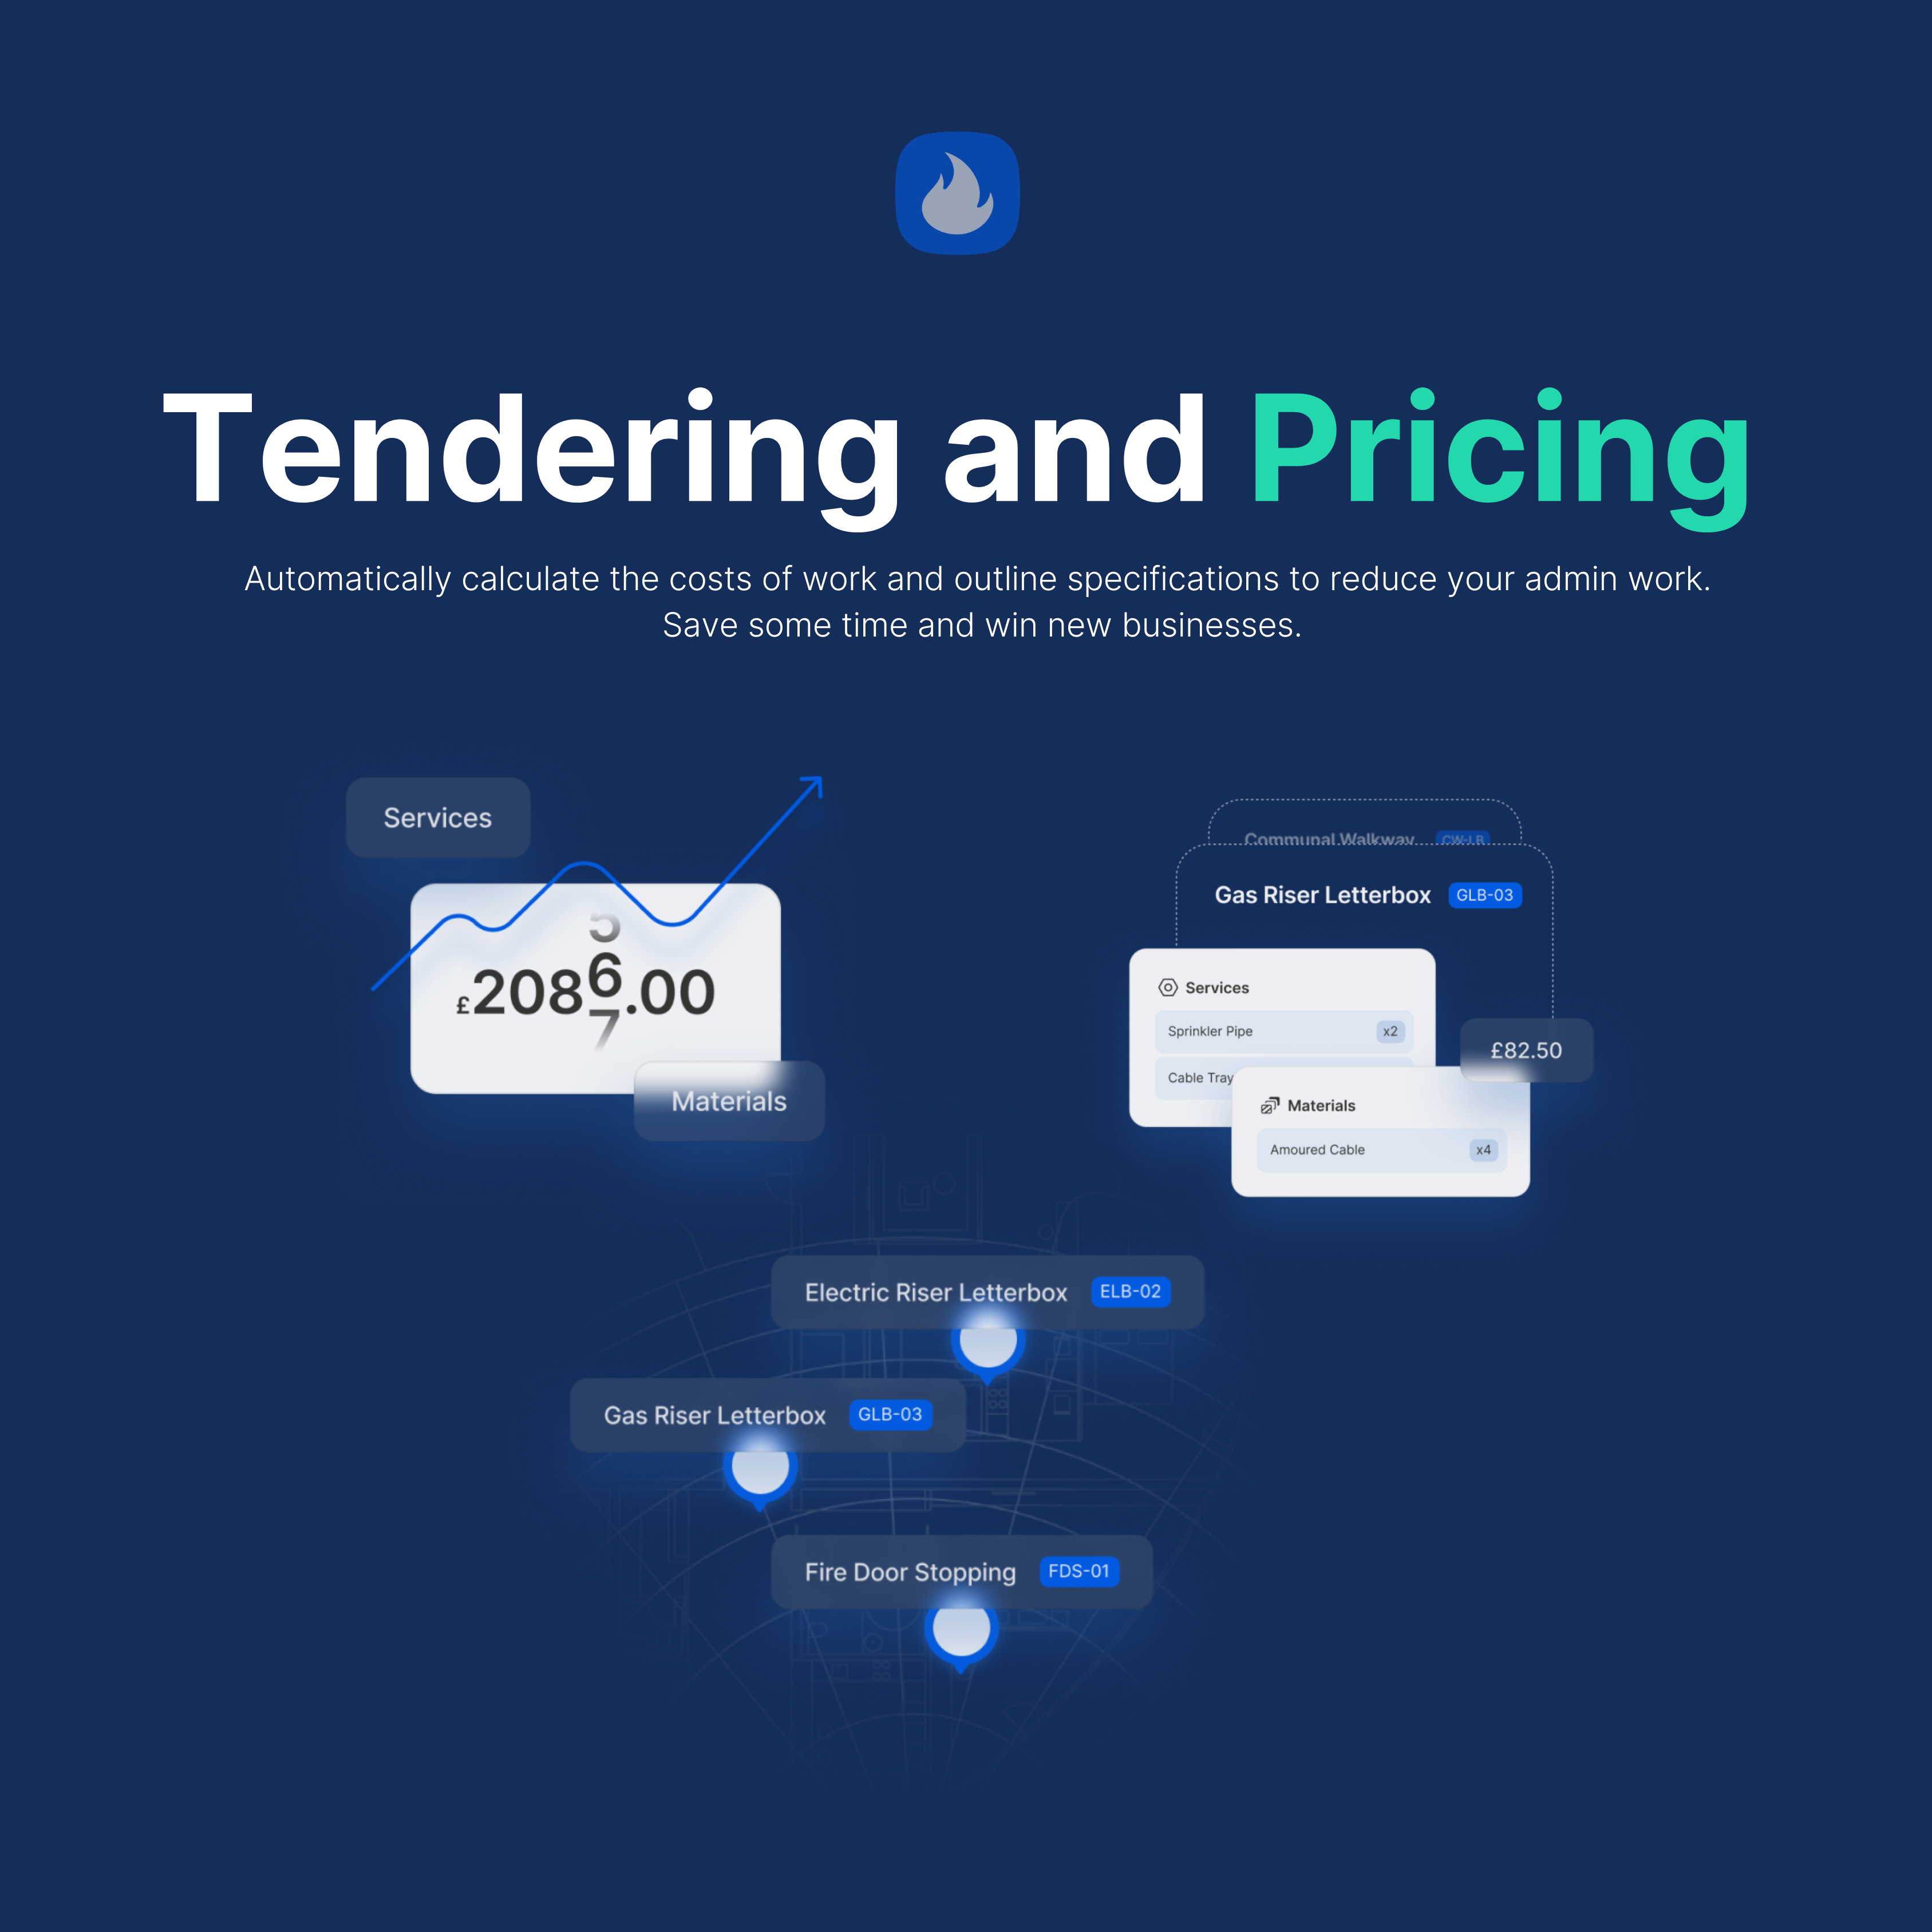 pricing-tendering-workforce-management-onetrace-digital-platform-2